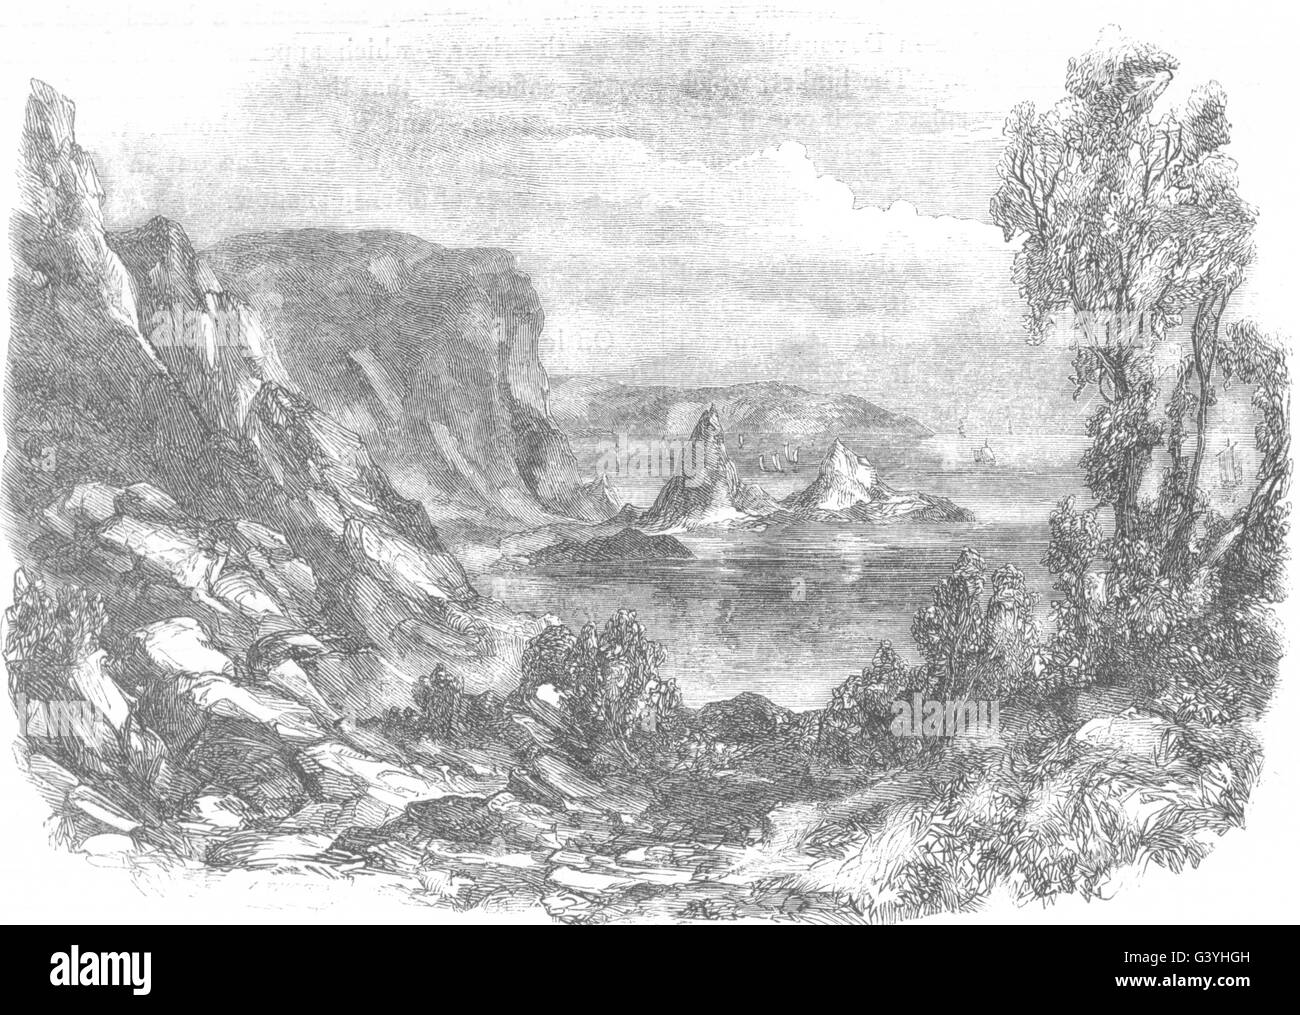 DEVON: Anstis Cove, antica stampa 1850 Foto Stock